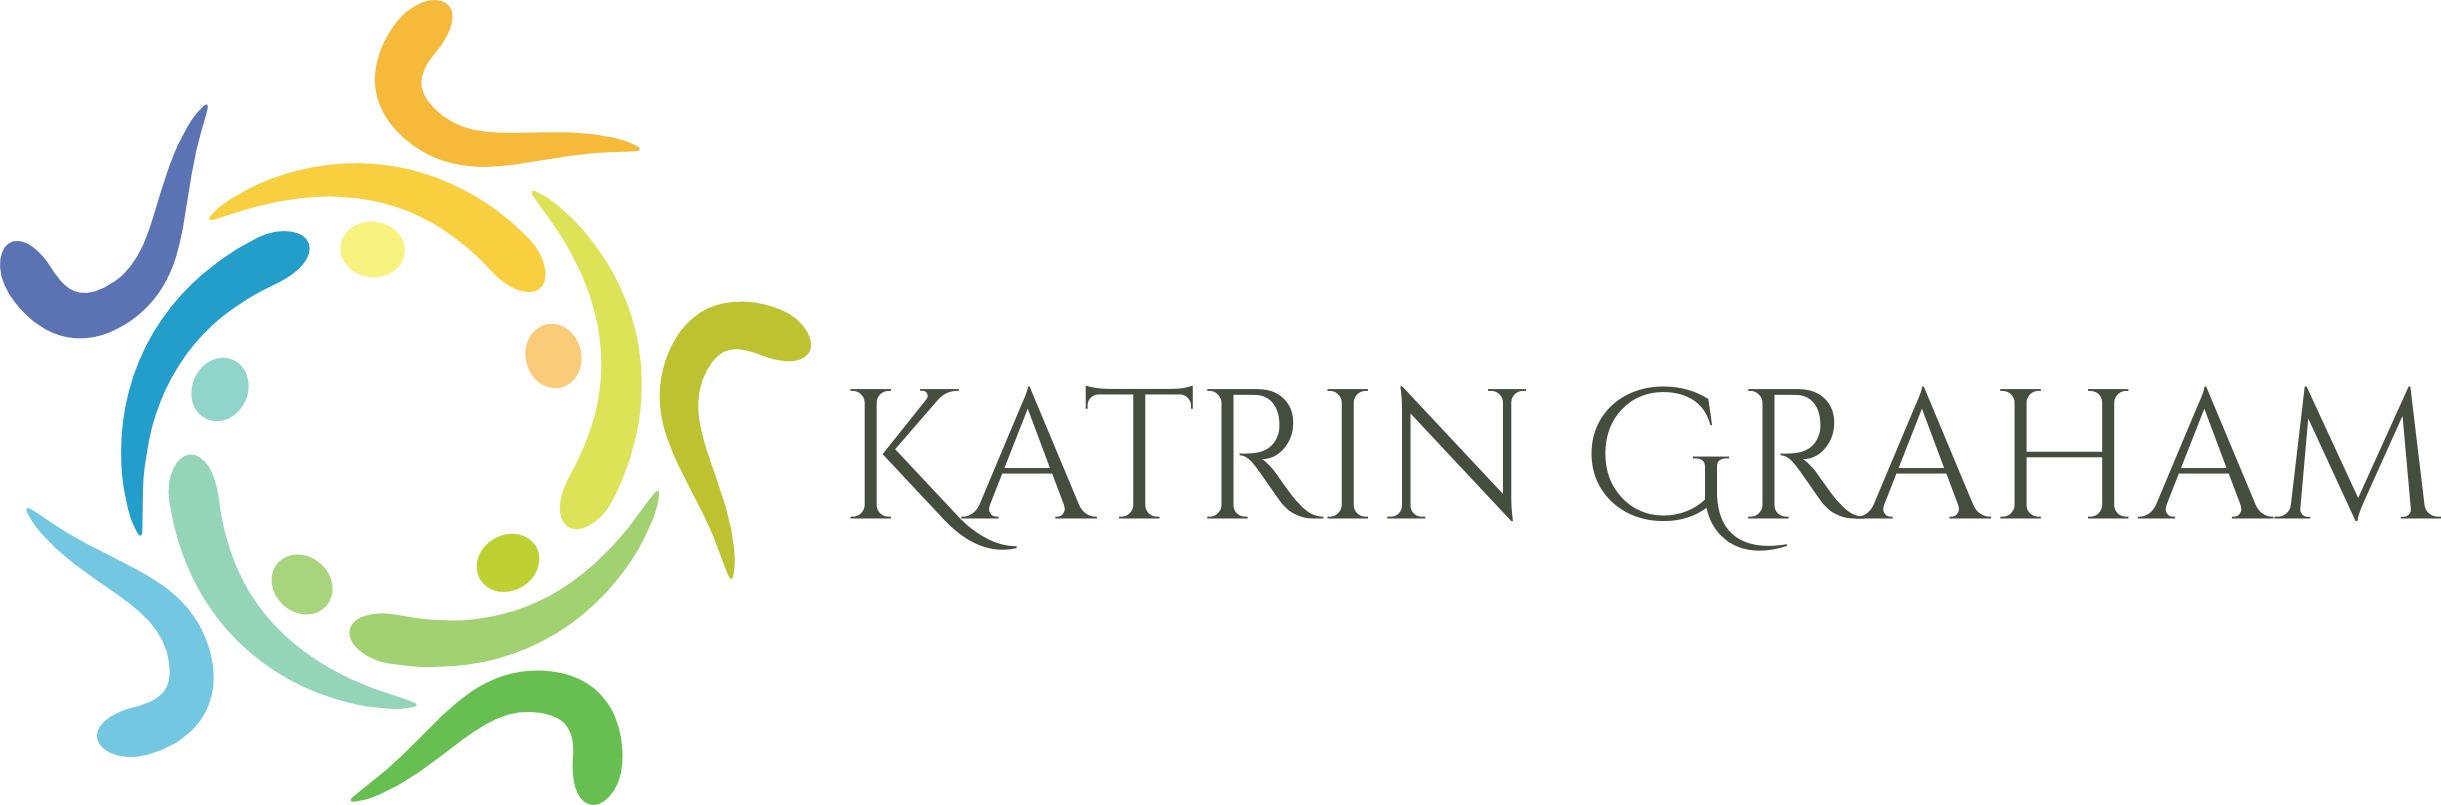 Katrin Graham in Witten bietet Supervision | Systemische Beratung & Therapie  | Coaching an.